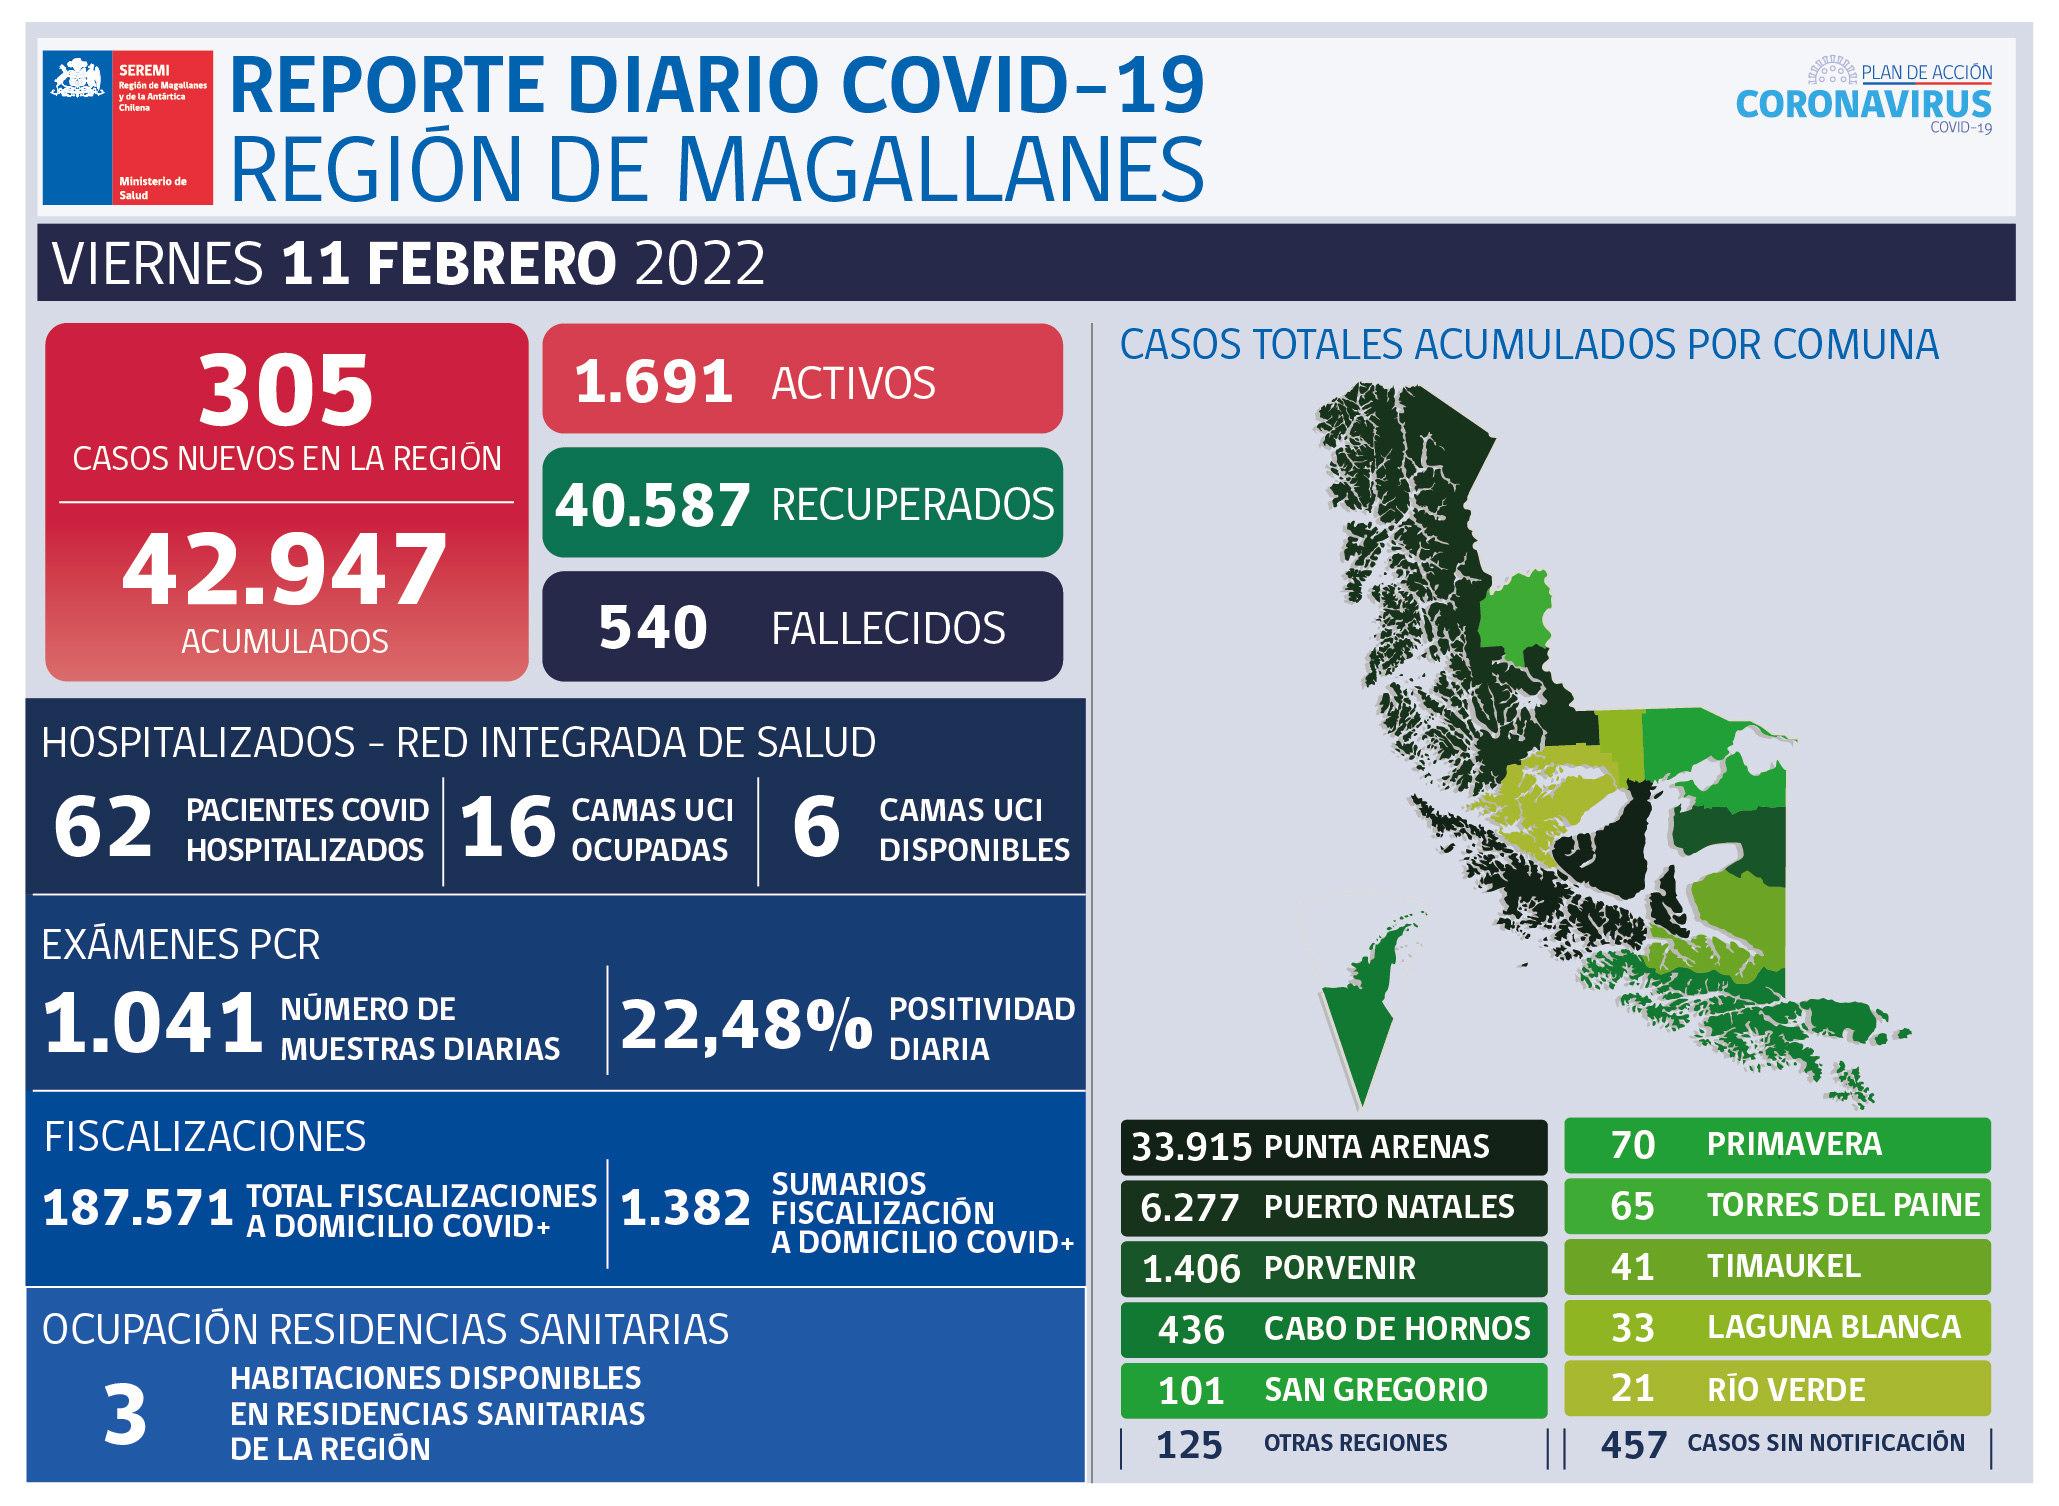 305 casos nuevos de covid19 se registran este viernes 11 de febrero en Magallanes